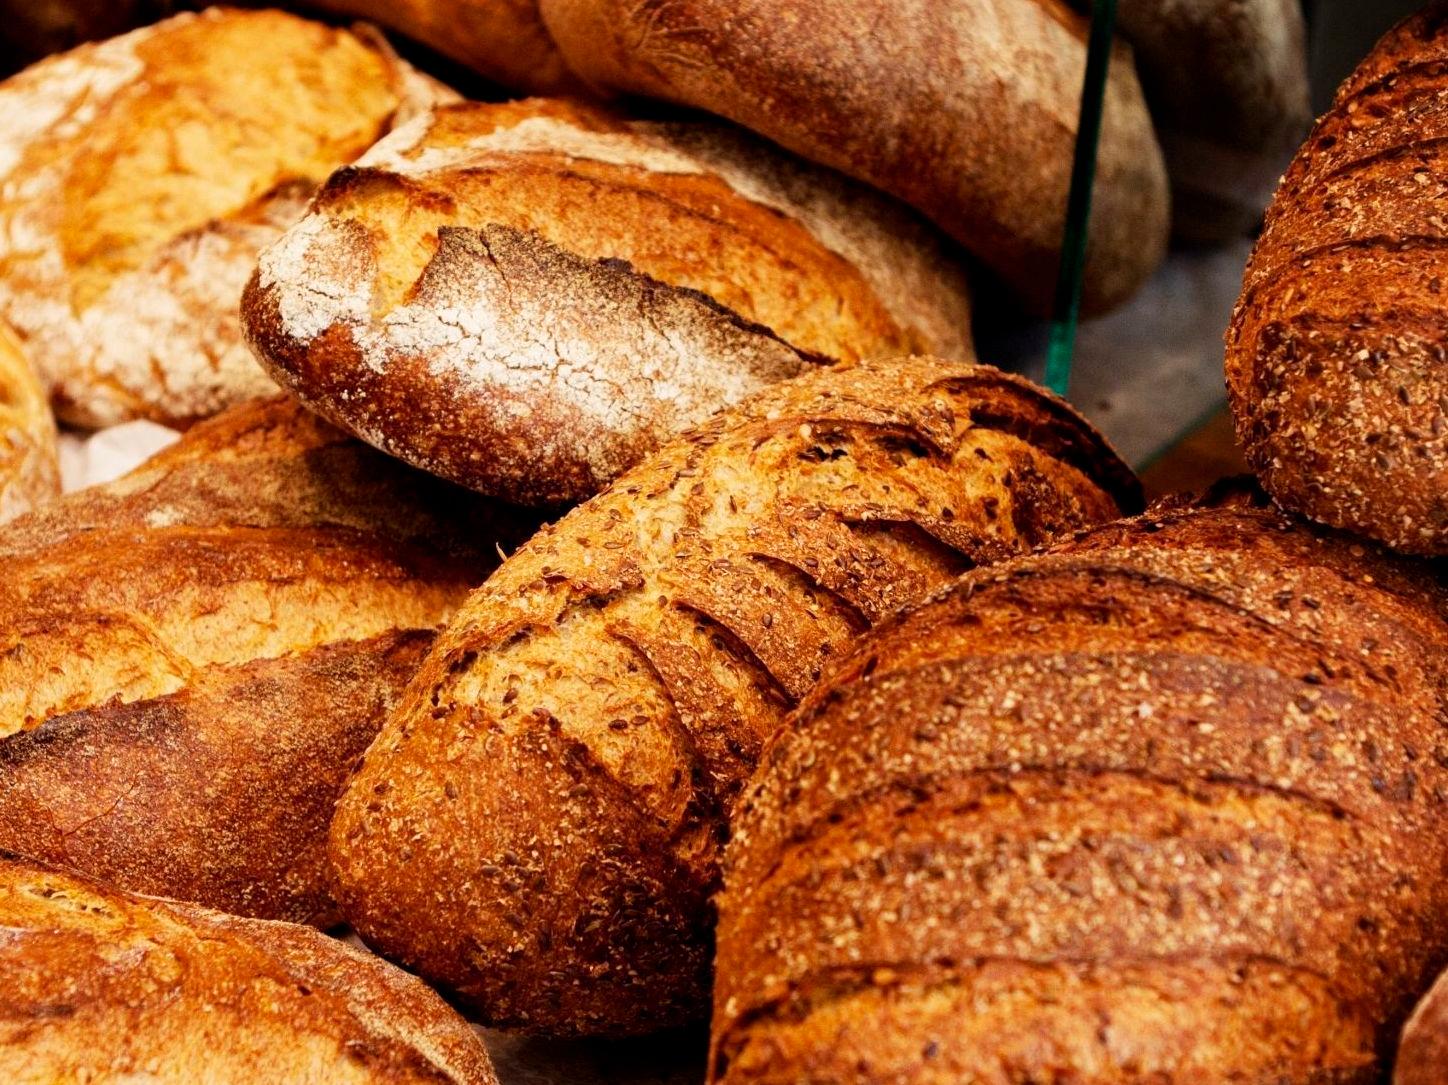 BLINGSESKUDD: Folket vil ha fullkorn - og grovt brød, ifølge en ny undersøkelse. Foto: Janne Møller-Hansen/VG